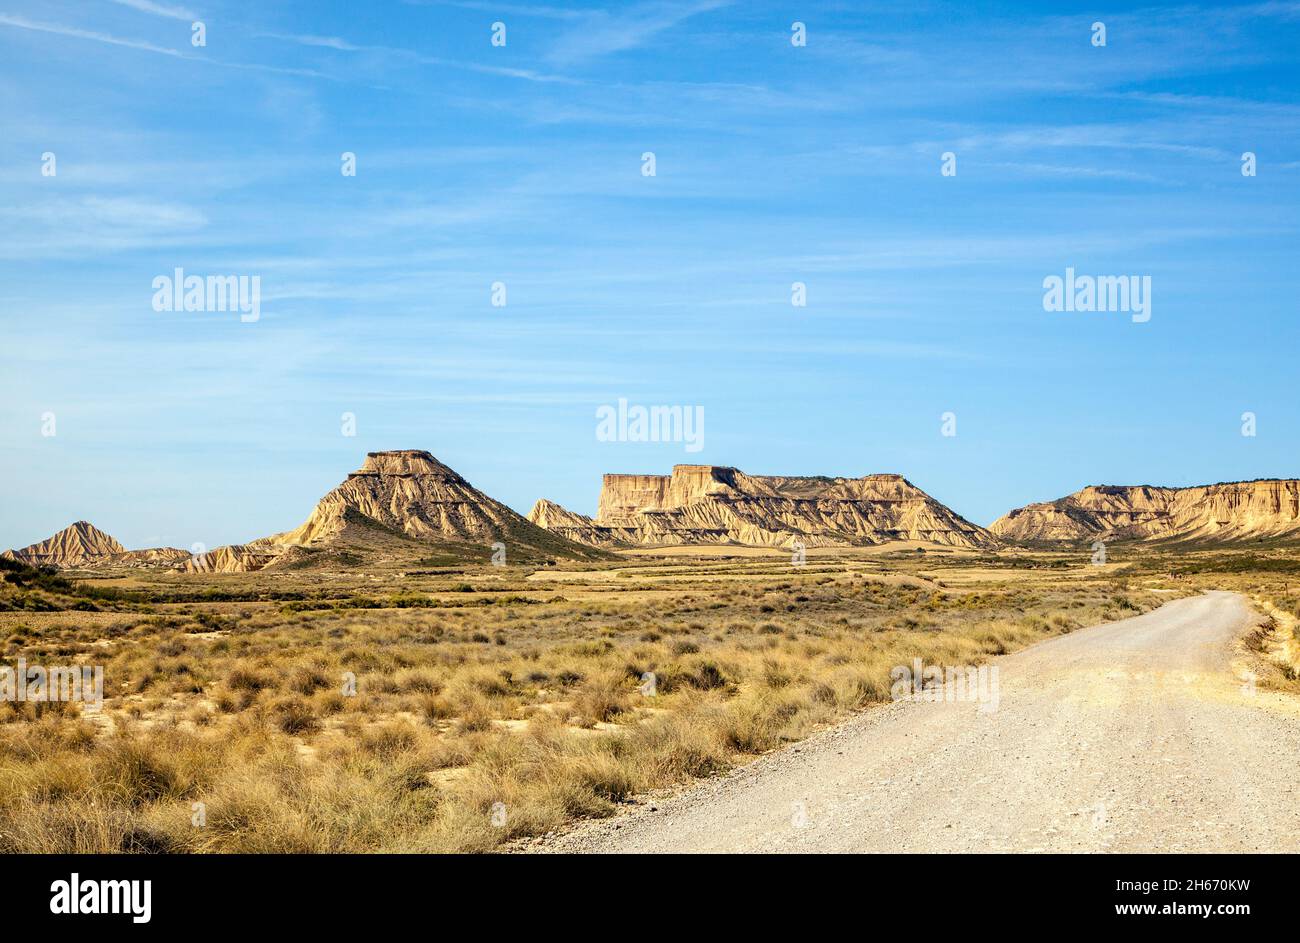 , Bardenas Reales est un parc naturel semi-aride de désert espagnol de l'UNESCO avec un paysage lunaire de 42,500 hectares.in la région de Navarre du nord de l'Espagne Banque D'Images